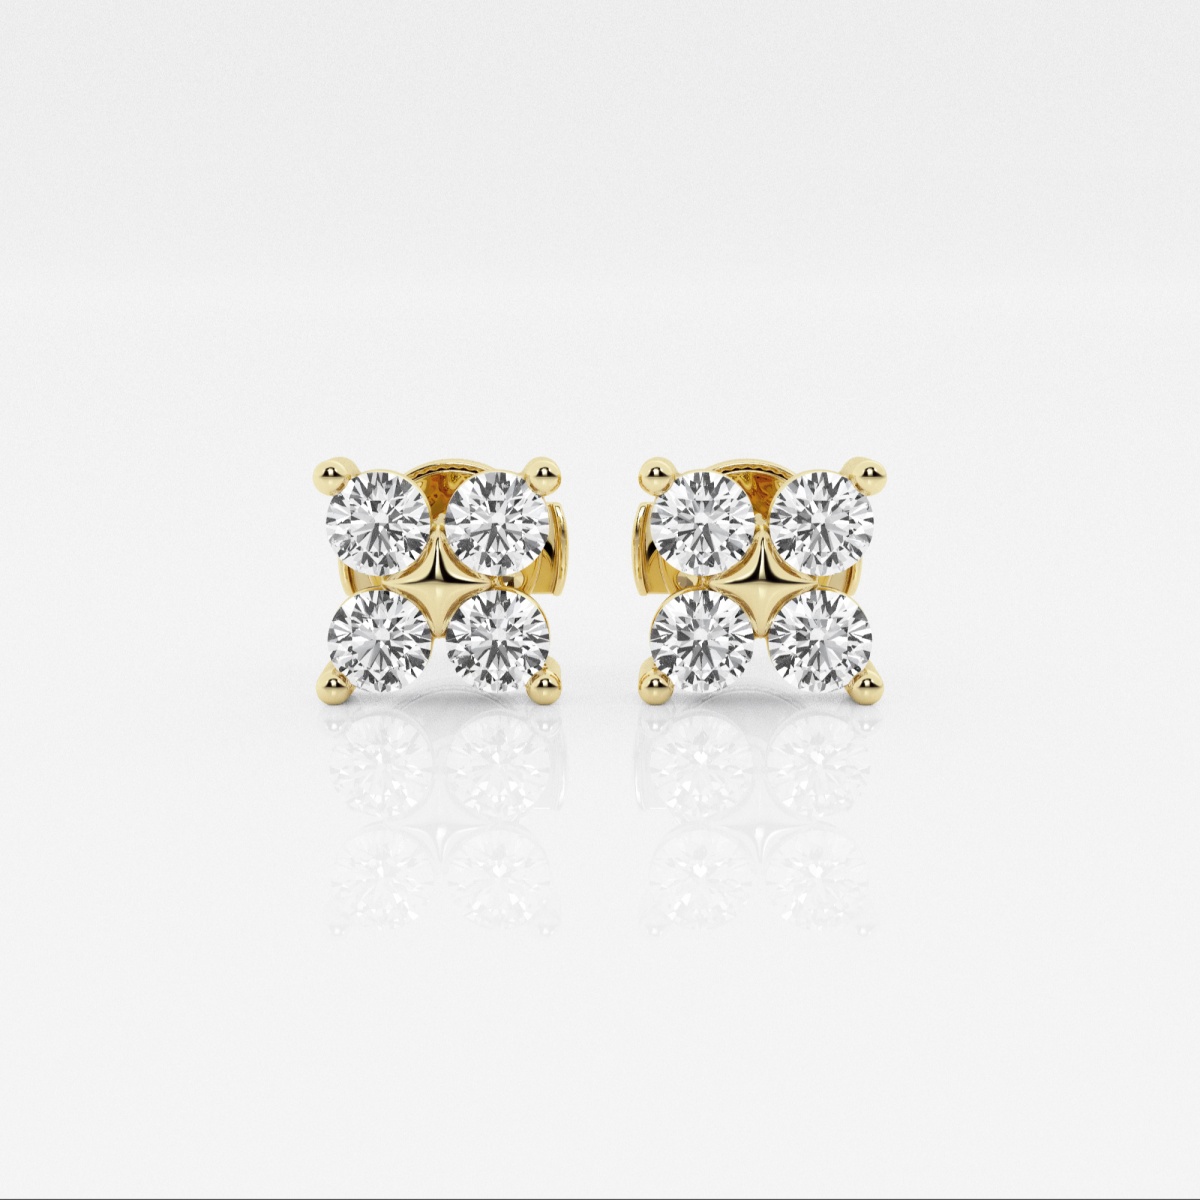 1 1/2 ctw Round Lab Grown Diamond Four Stone Fashion Earrings